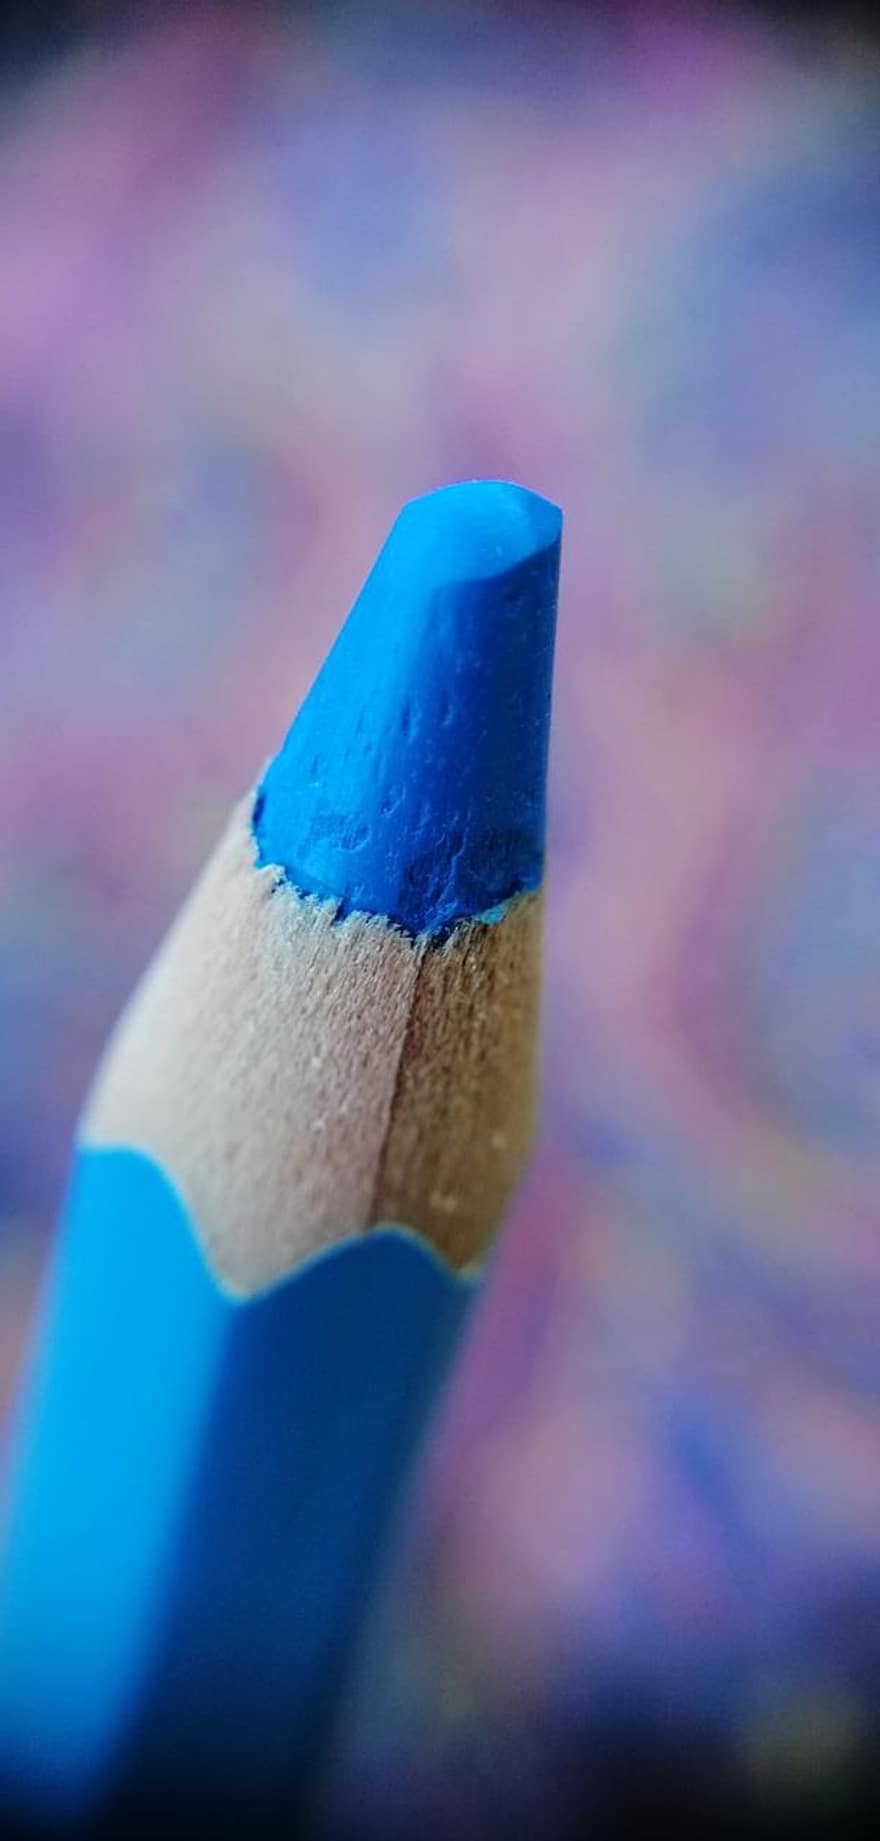 creion colorat, albastru creion, albastru creion de culoare, albastru, Arte și Meserii, materiale de Artă, material de colorare, colorare, fotografierea macro, bokeh